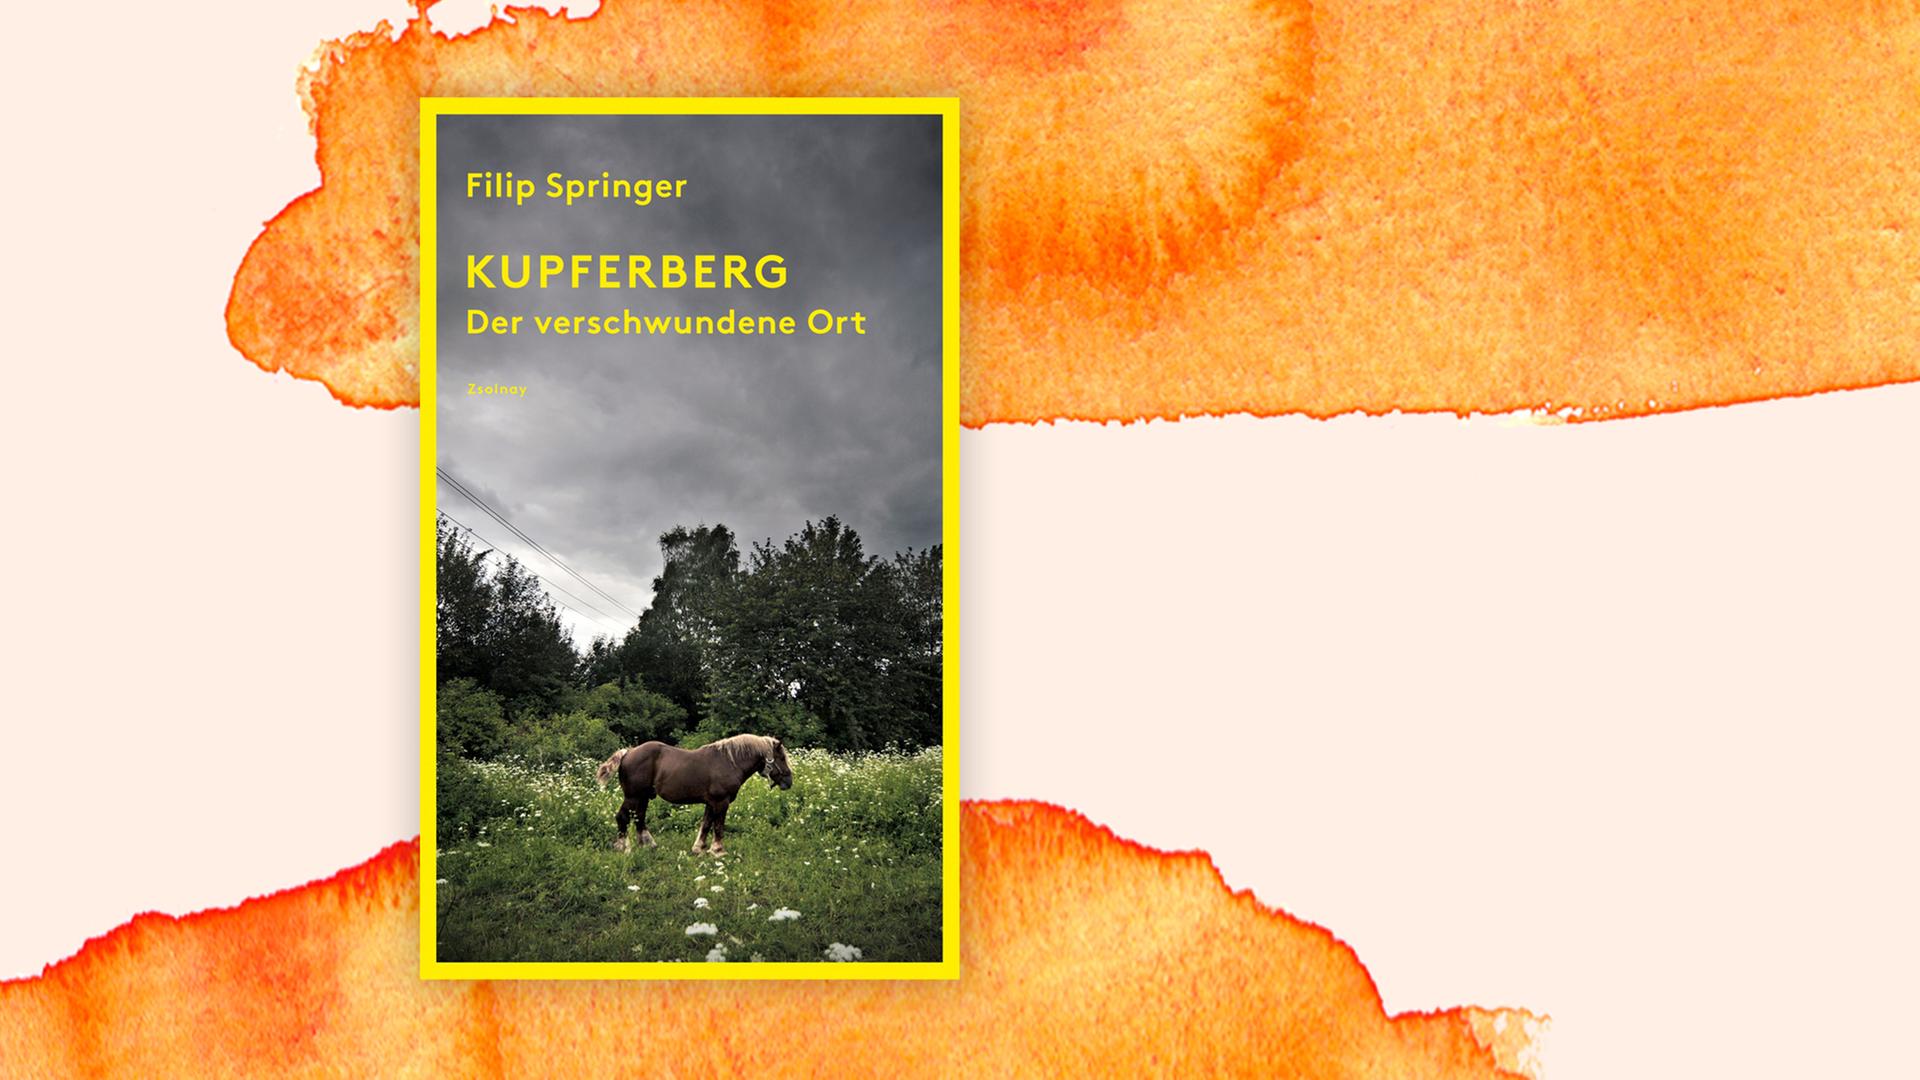 Das Buchcover zeigt ein Pferd auf einer Weide, dahinter ein aquarellierter Hintergrund.